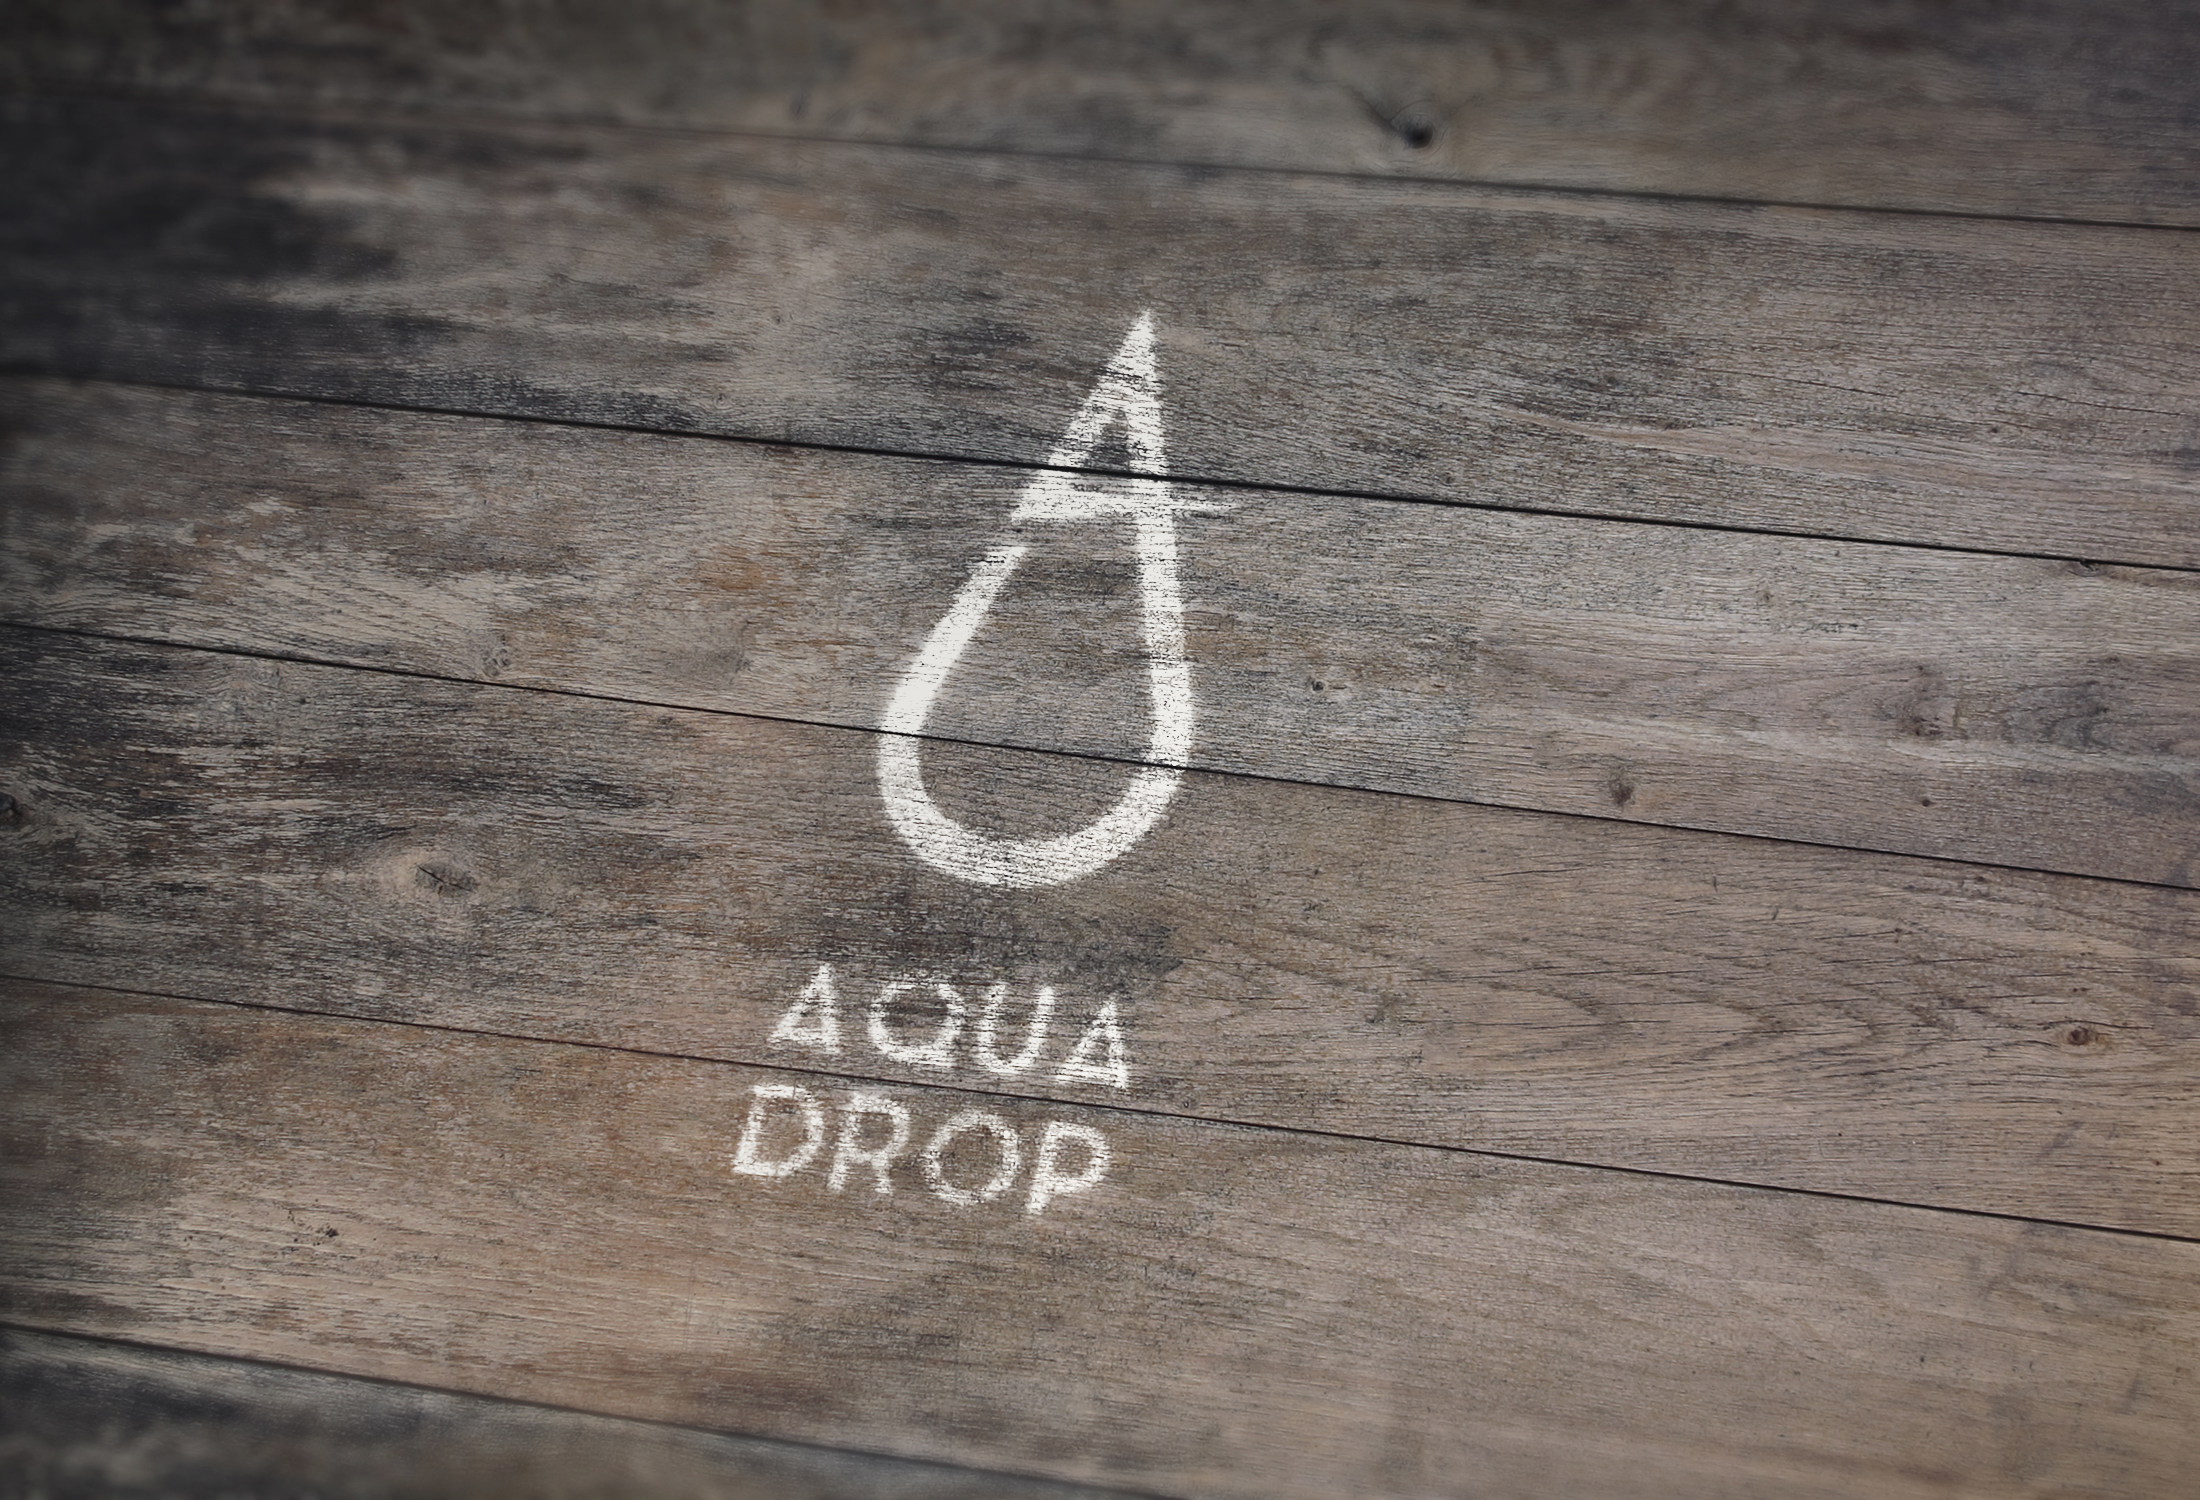 Logo_Aqua Drop